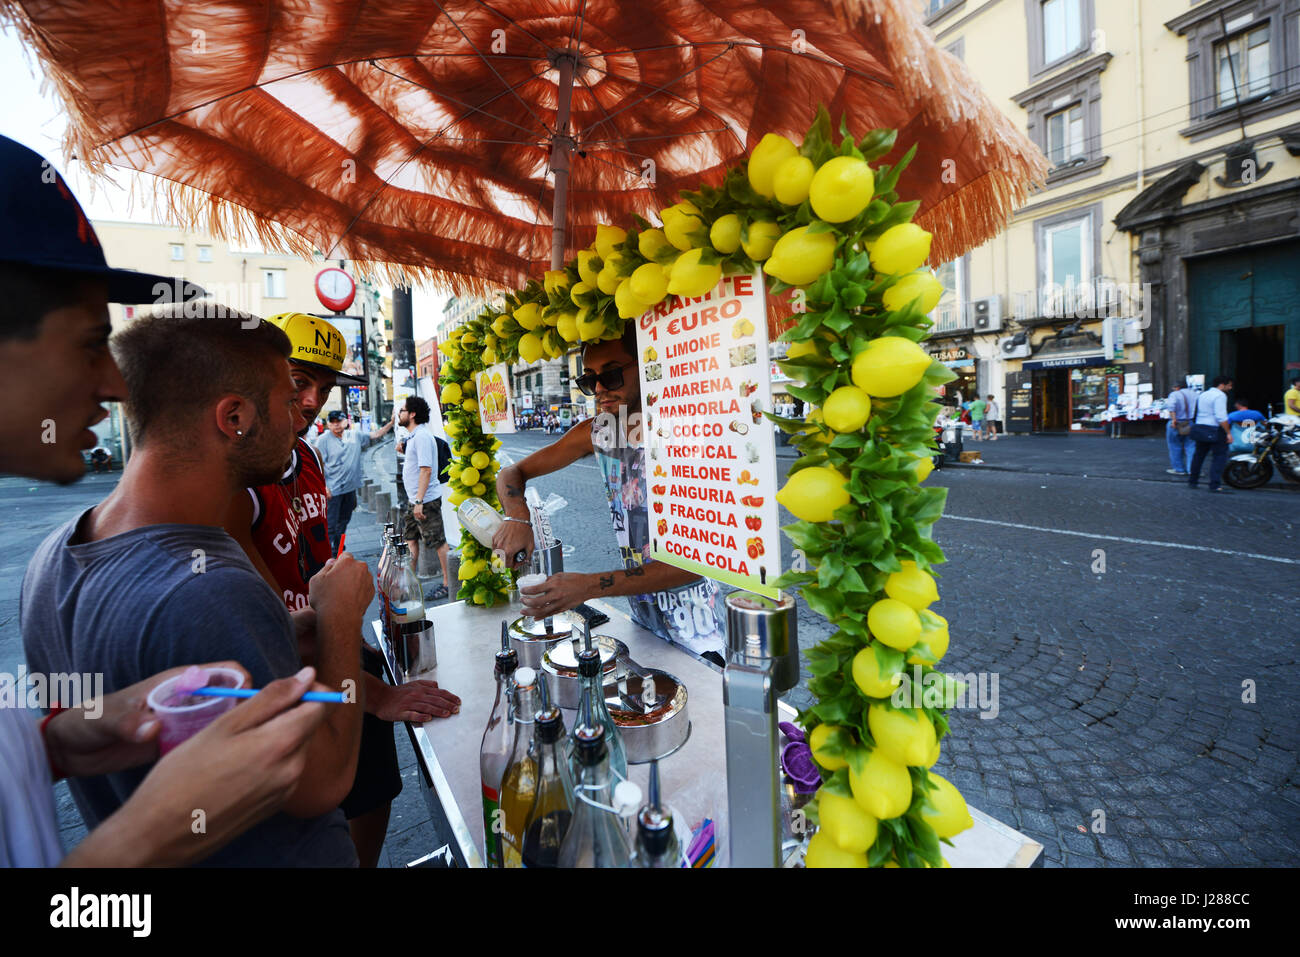 Fresh Lemonade stall in Naples, Italy. Stock Photo